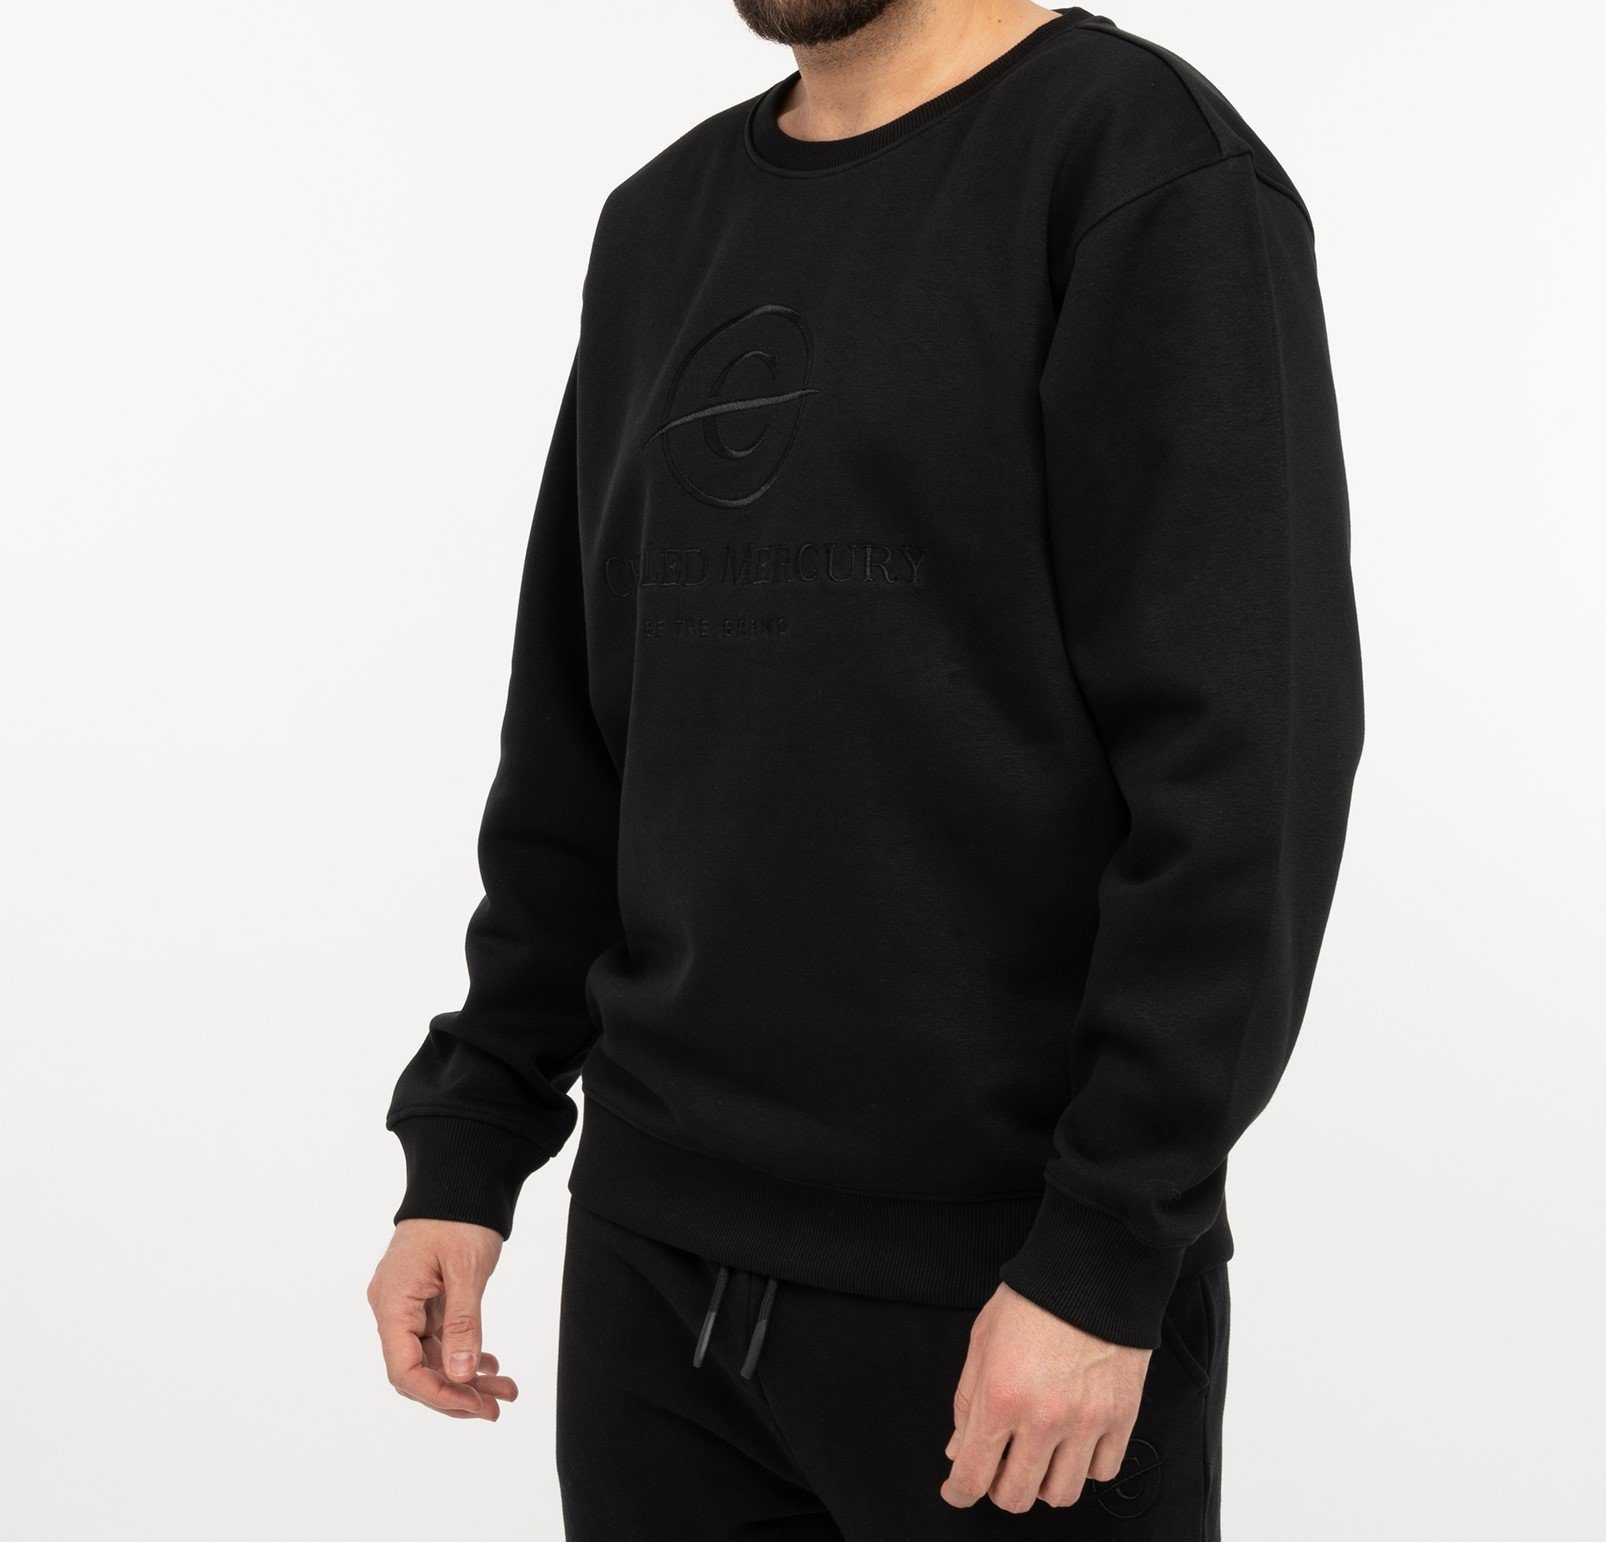 Männer Schwarz Sweatshirt Pullover/ Chilled Mercury